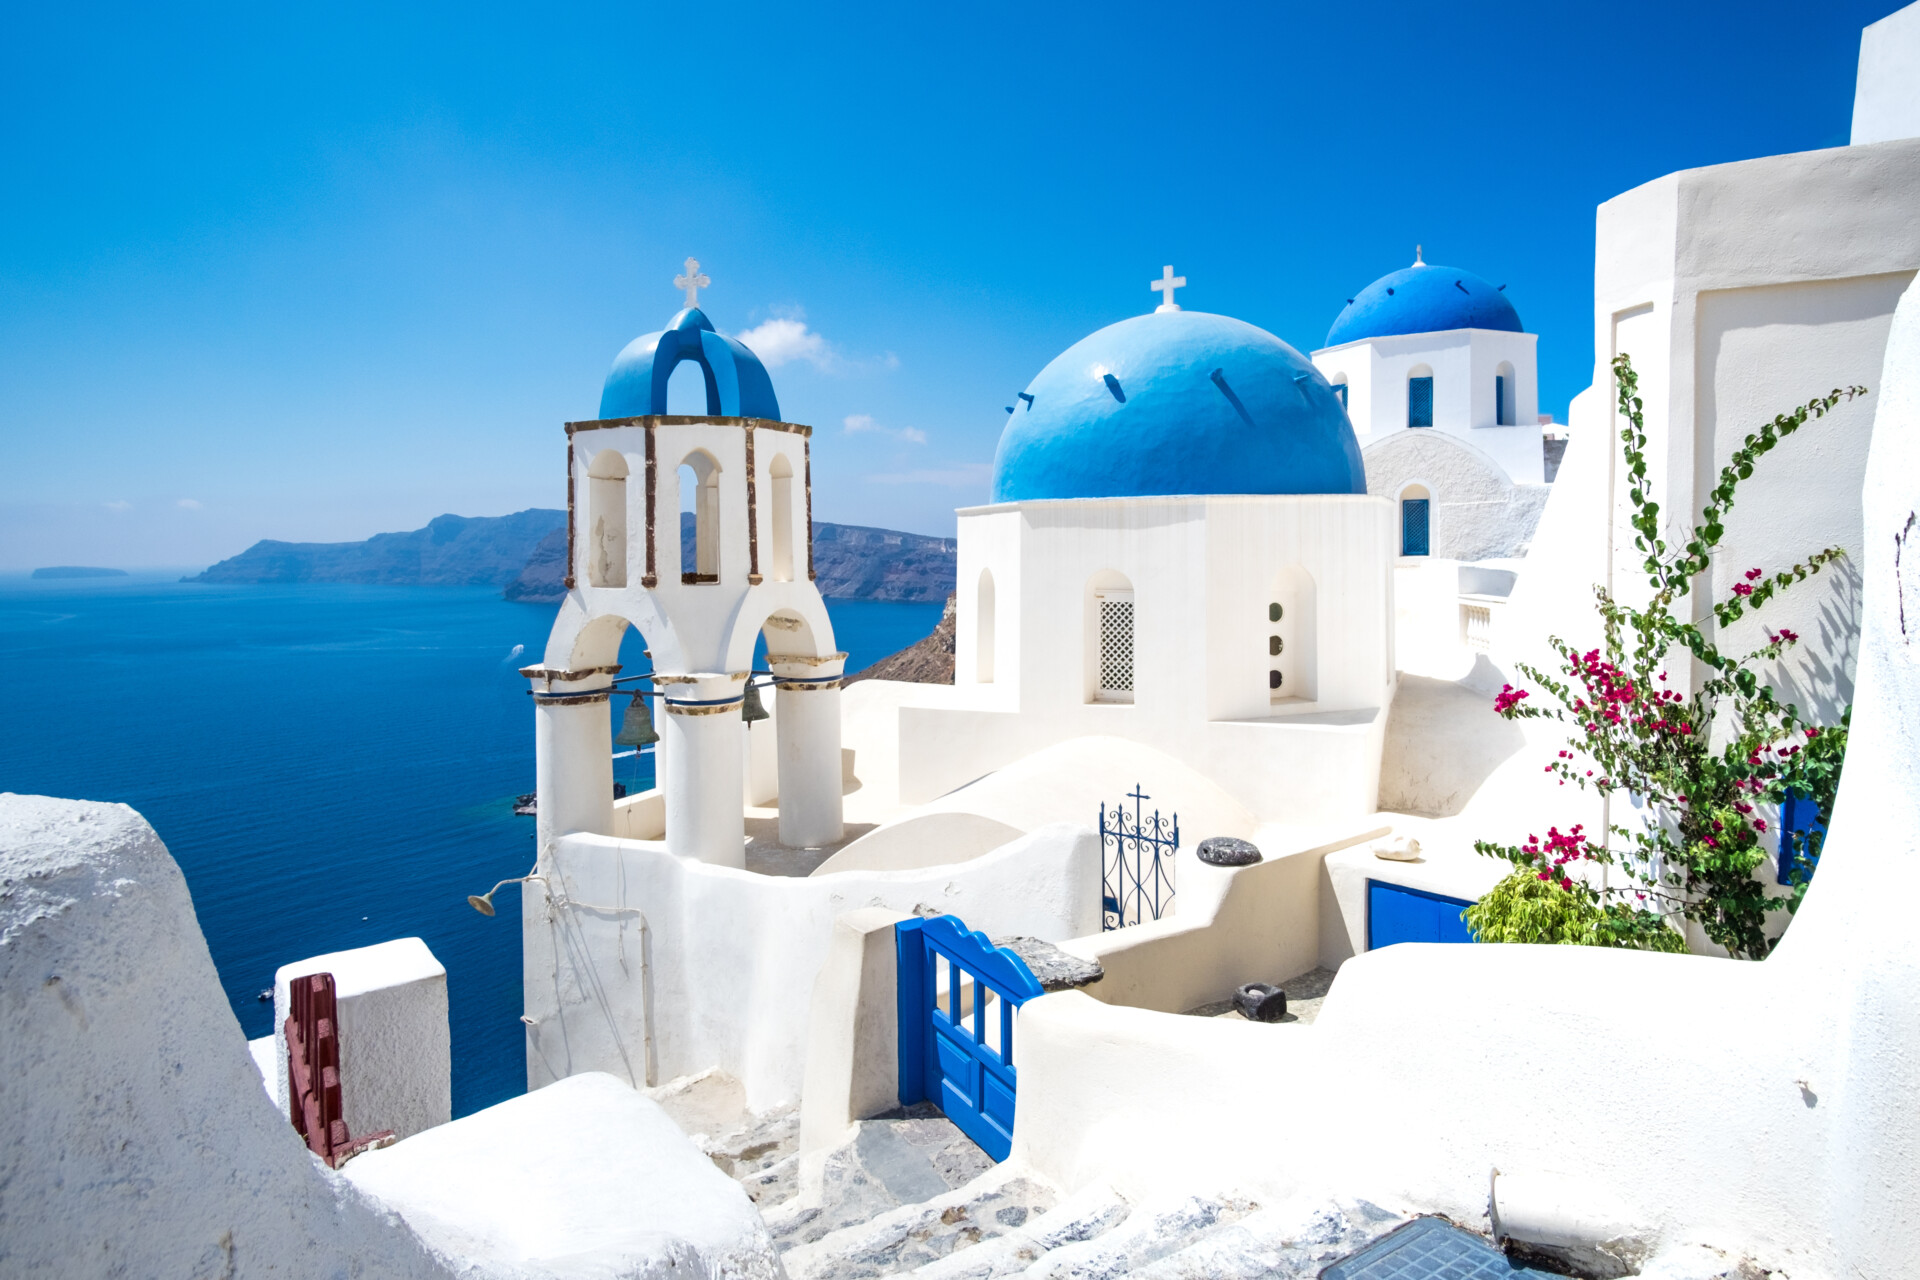 Malerische Aussicht auf traditionelle weiße Kykladenhäuser und blaue Kuppeln im Dorf Oia auf der griechischen Insel Santorini